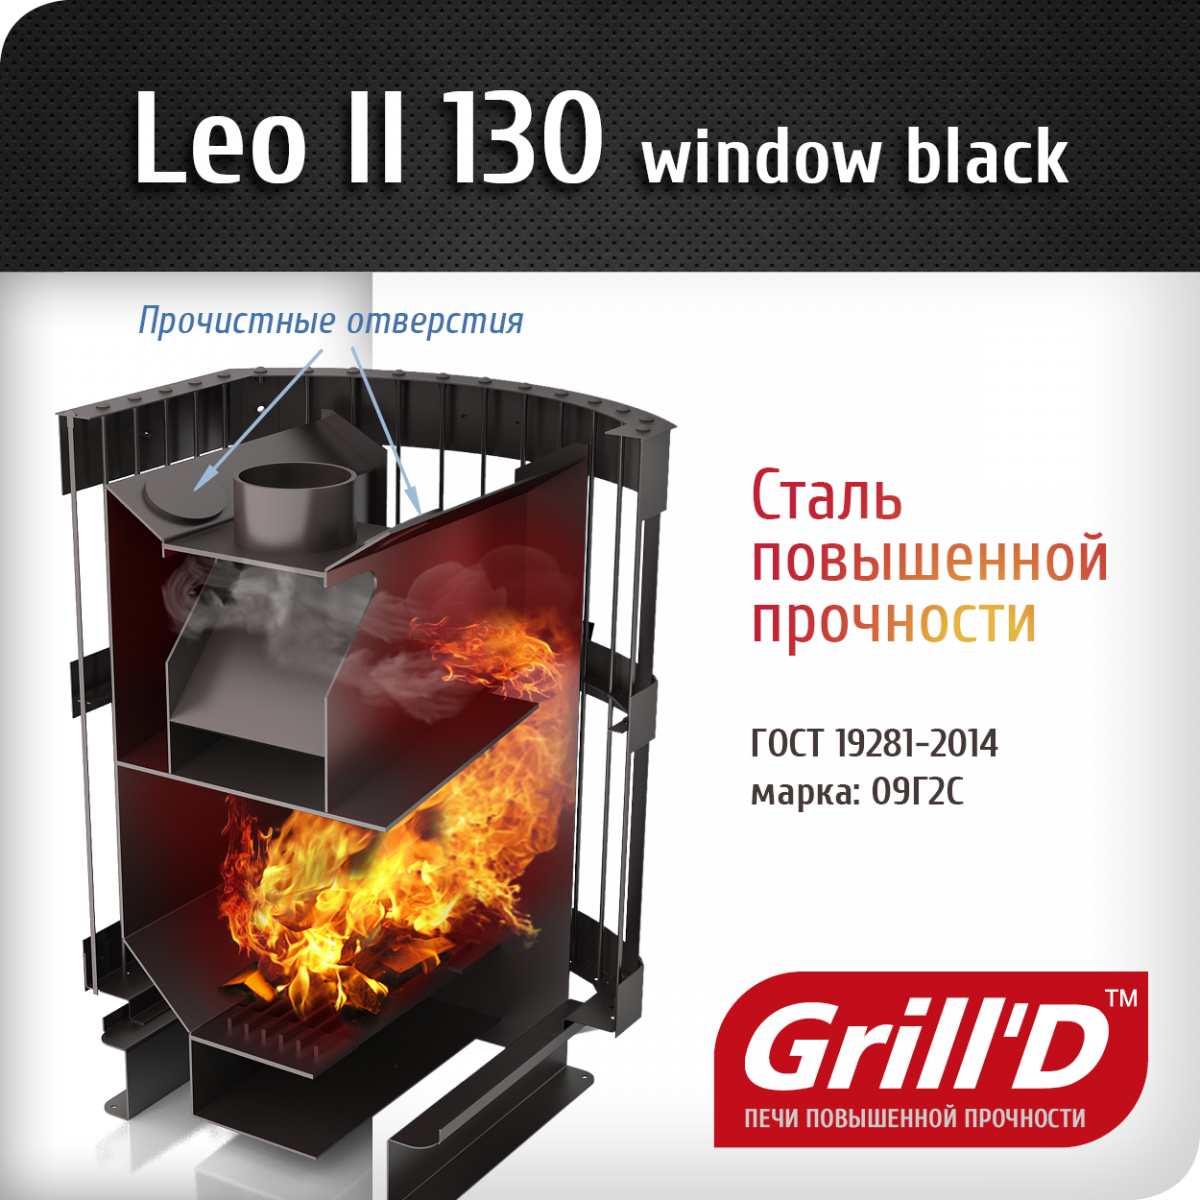 Фото товара Банная печь Grill'D Leo II 130 Window black. Изображение №2